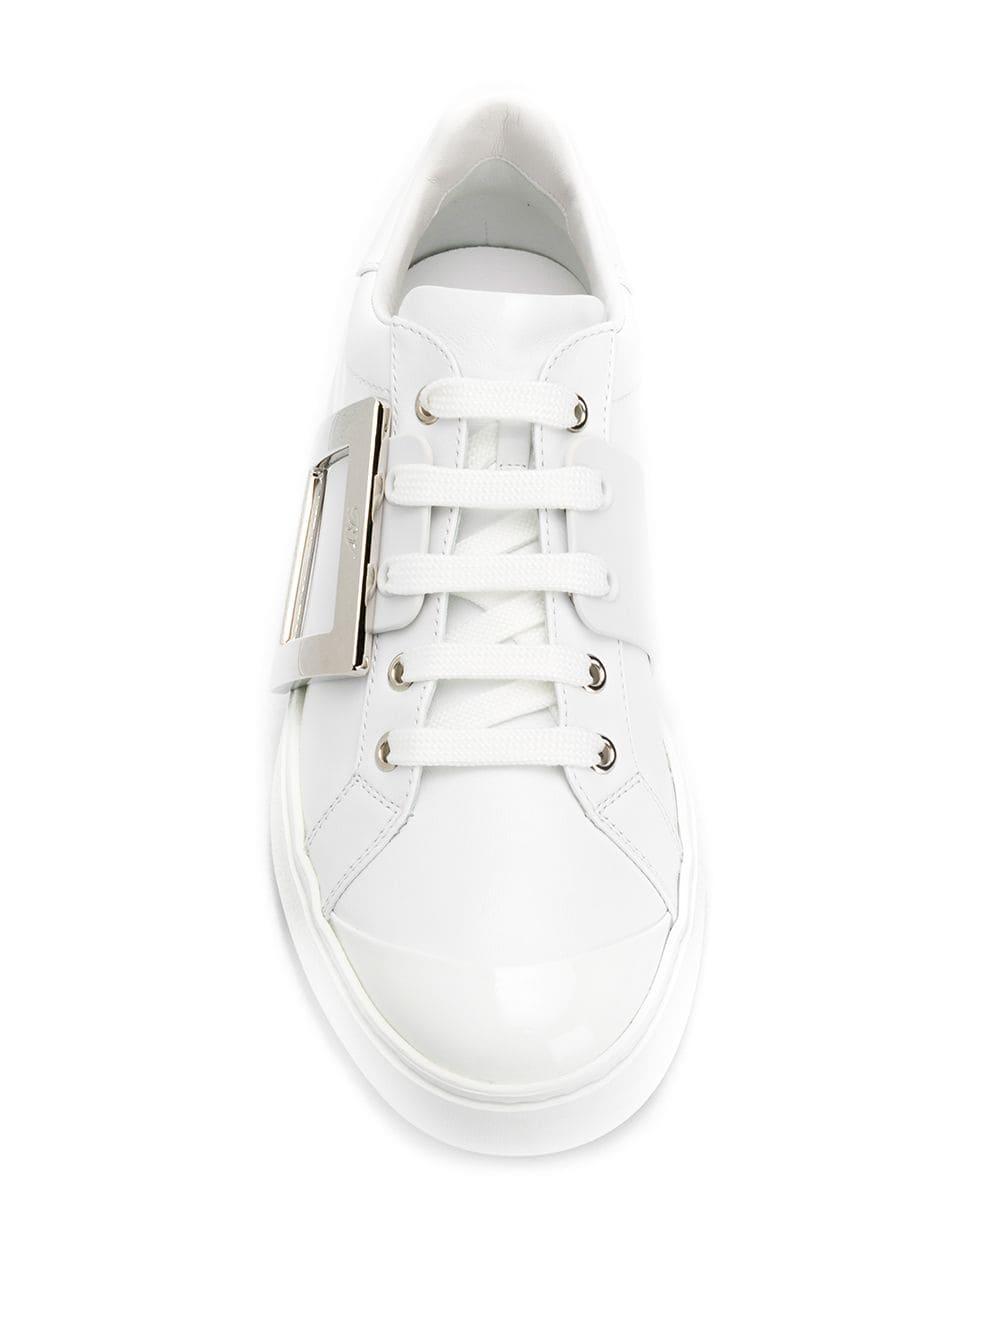 Roger Vivier Viv Skate Leather Sneakers in White - Lyst